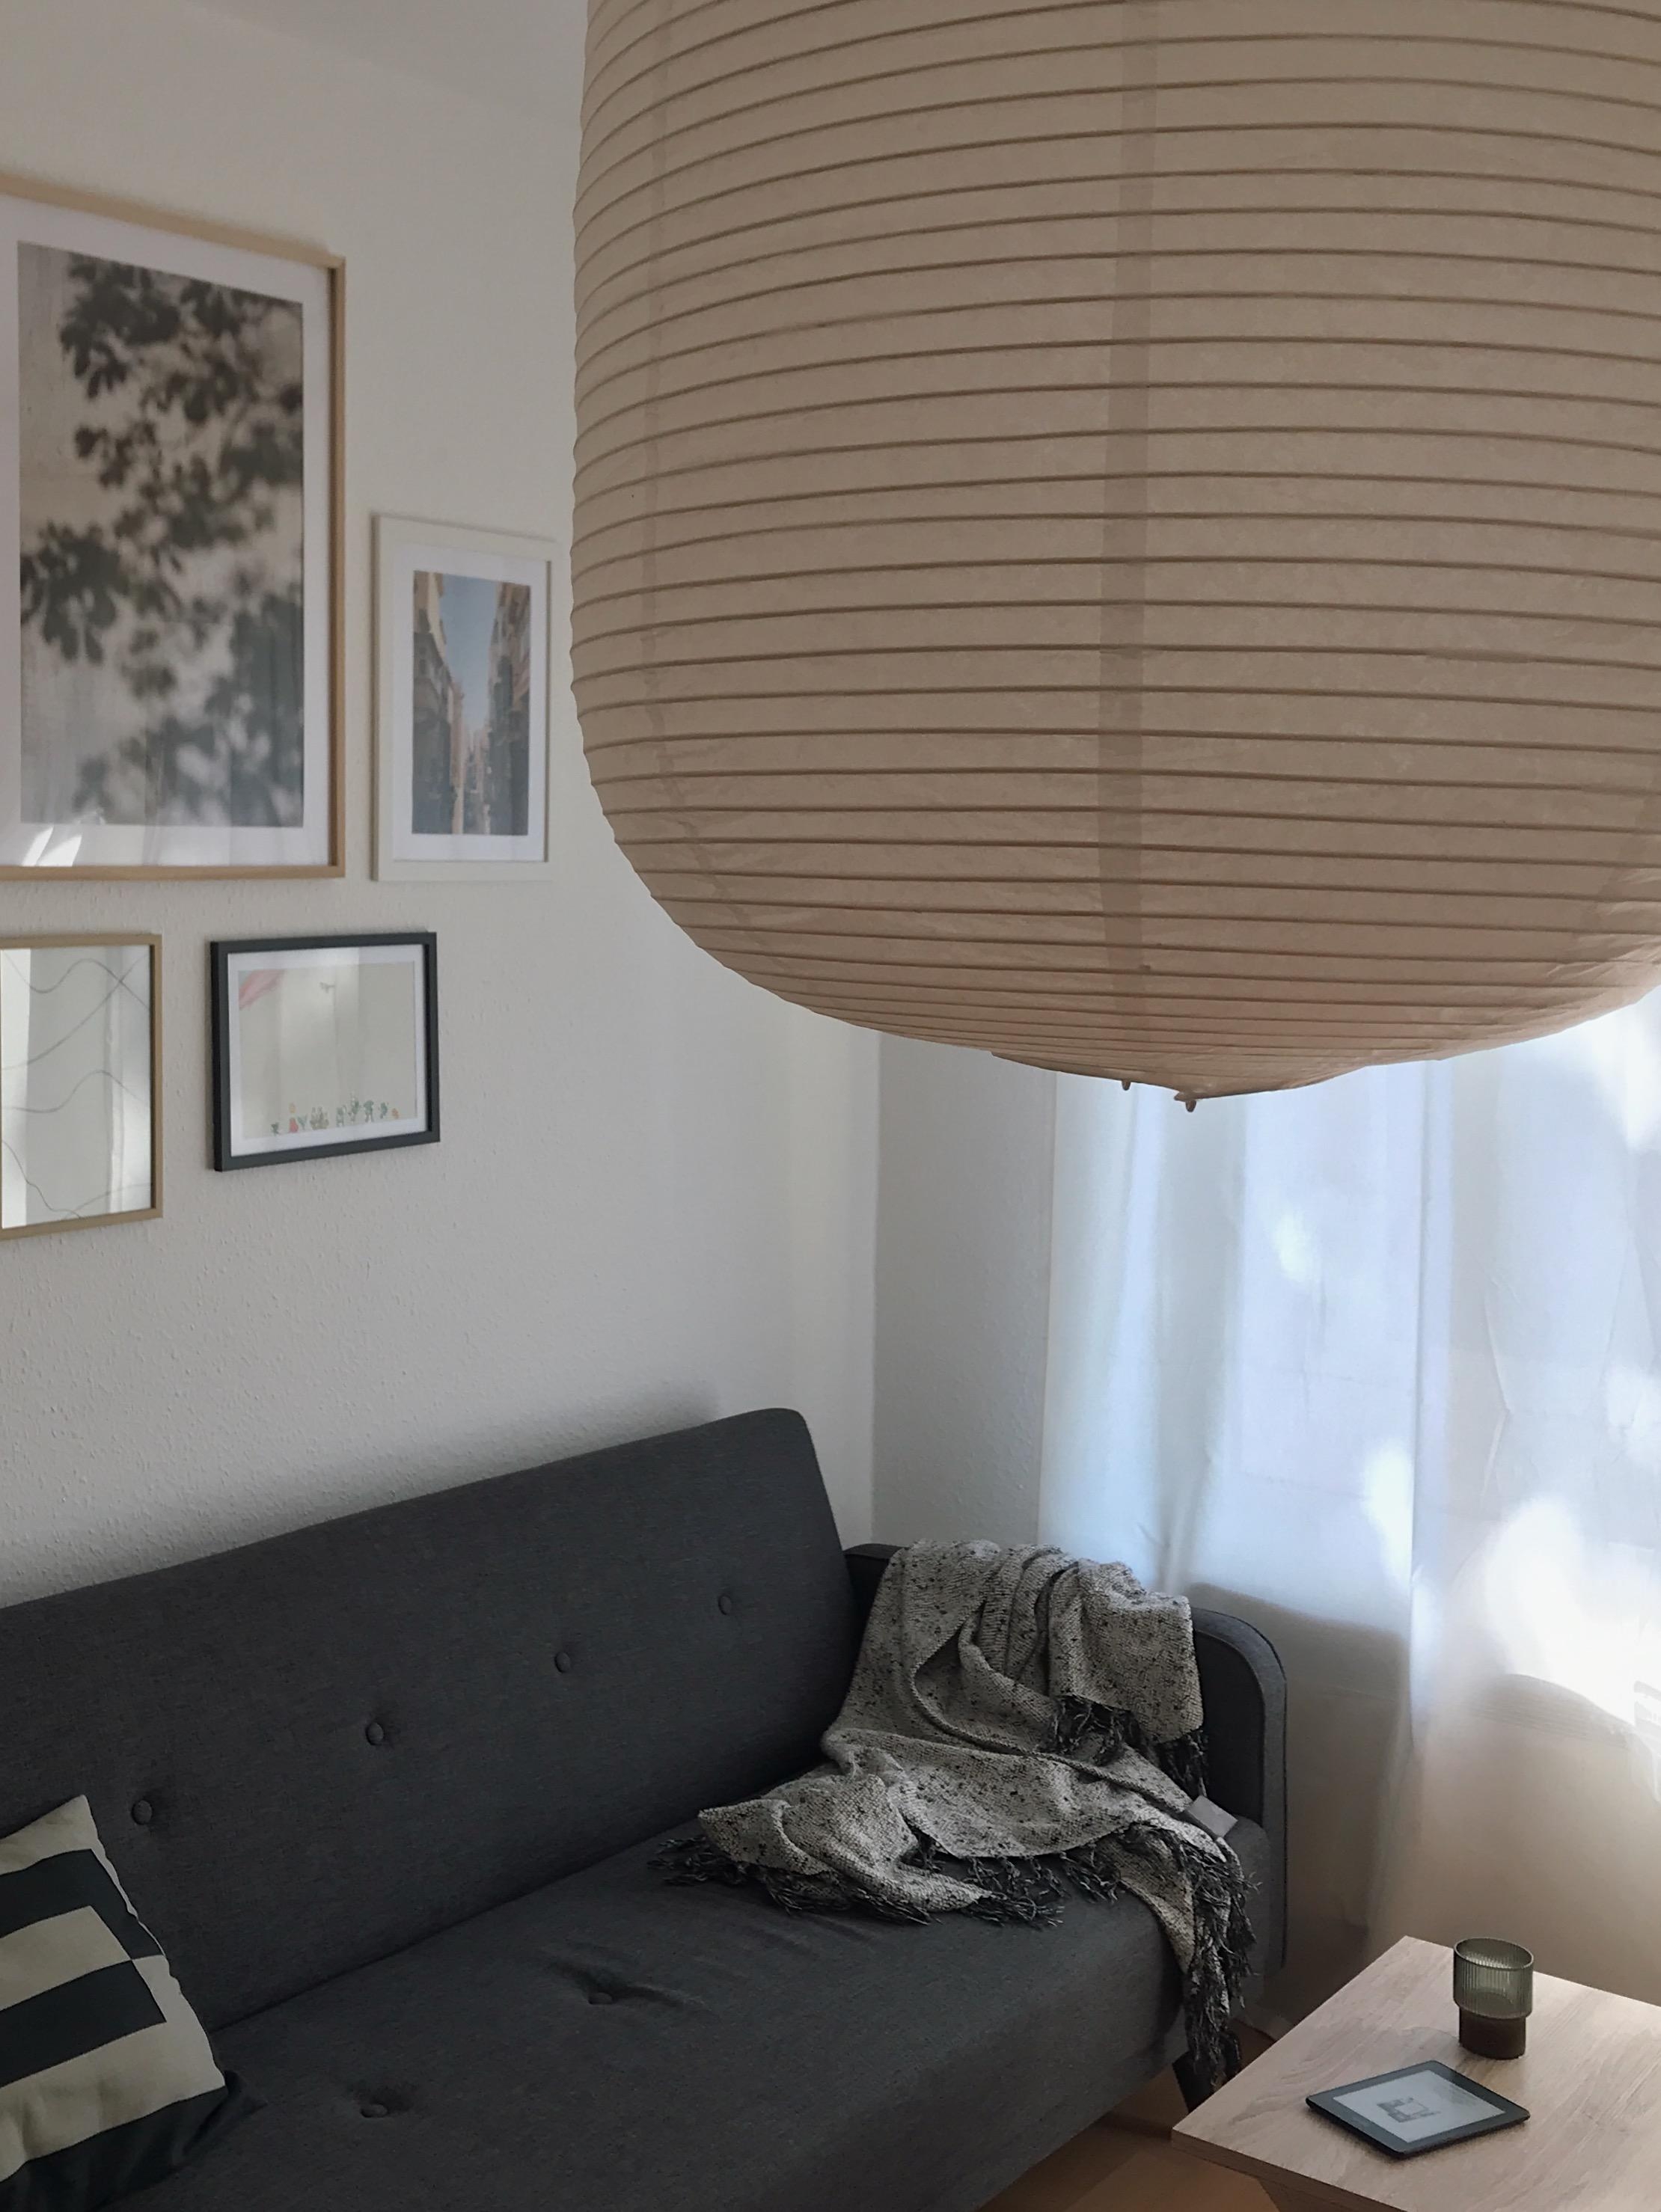 Eine neue Lampe ist bei mir eingezogen #HAY #ricepaperlamp